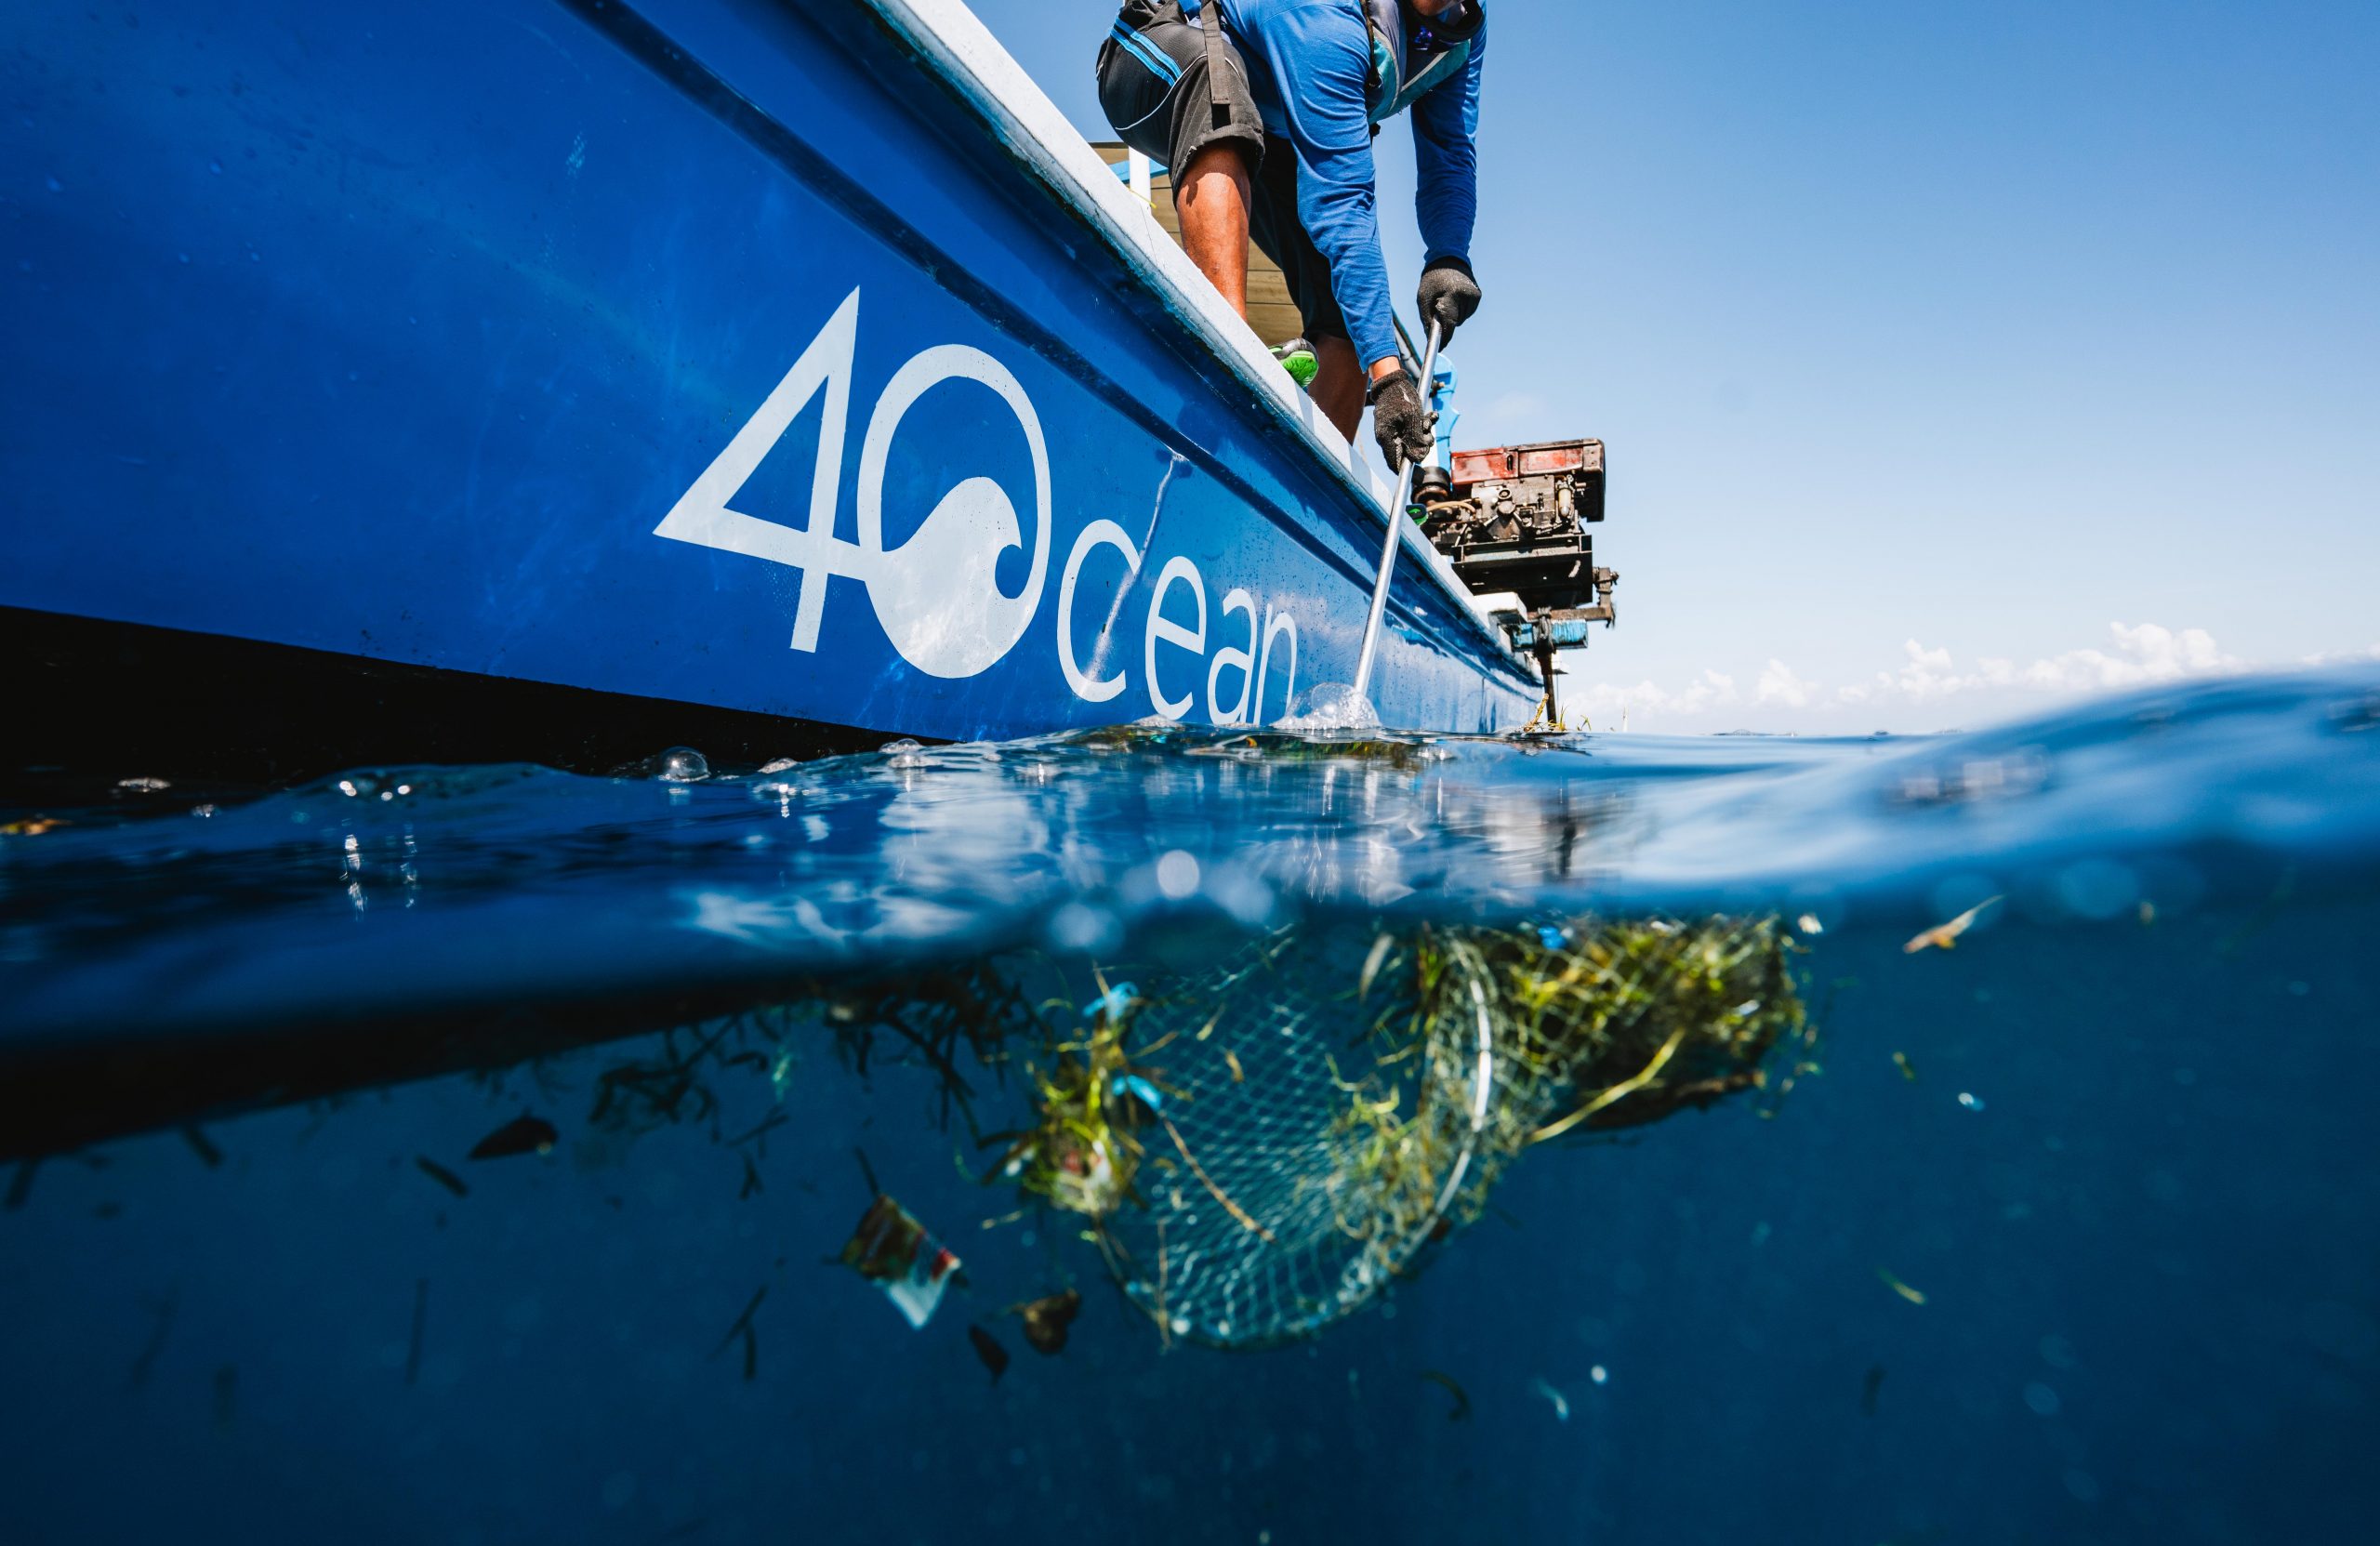 4ocean membersihkan rekor 30 juta pon plastik laut – Thred.com